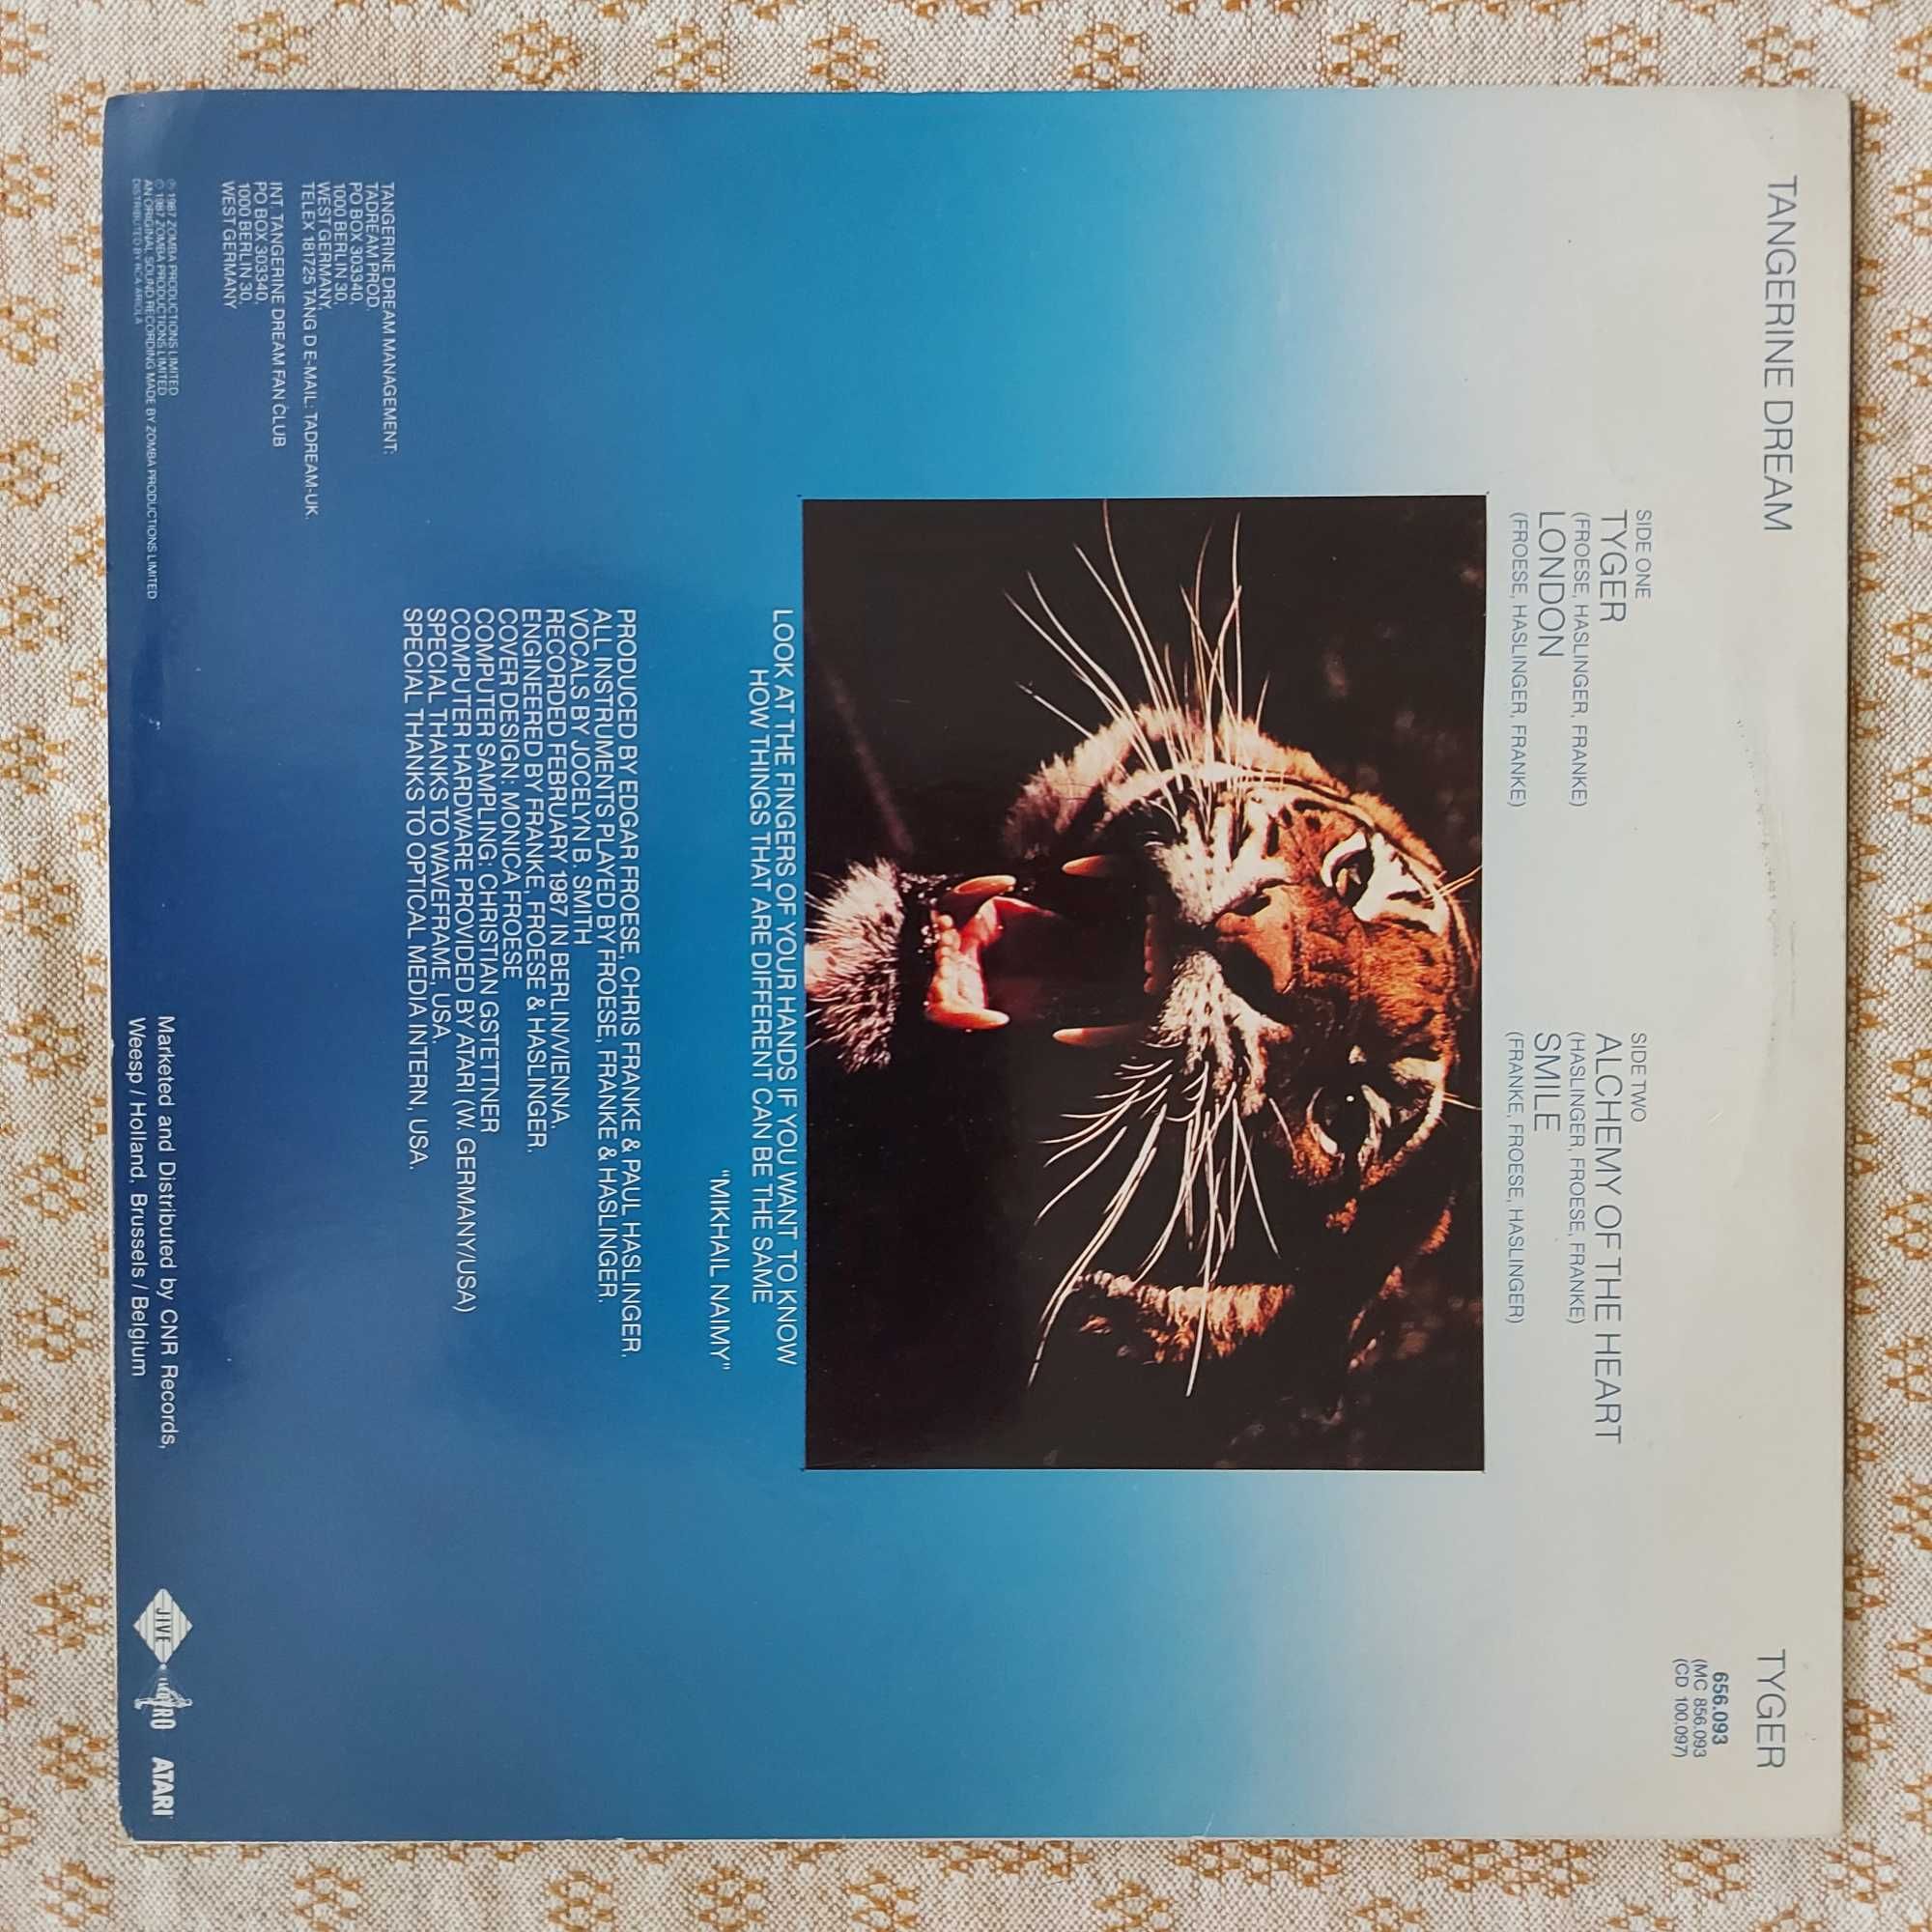 Tangerine Dream Tyger  1987 NL (NM-/EX-)